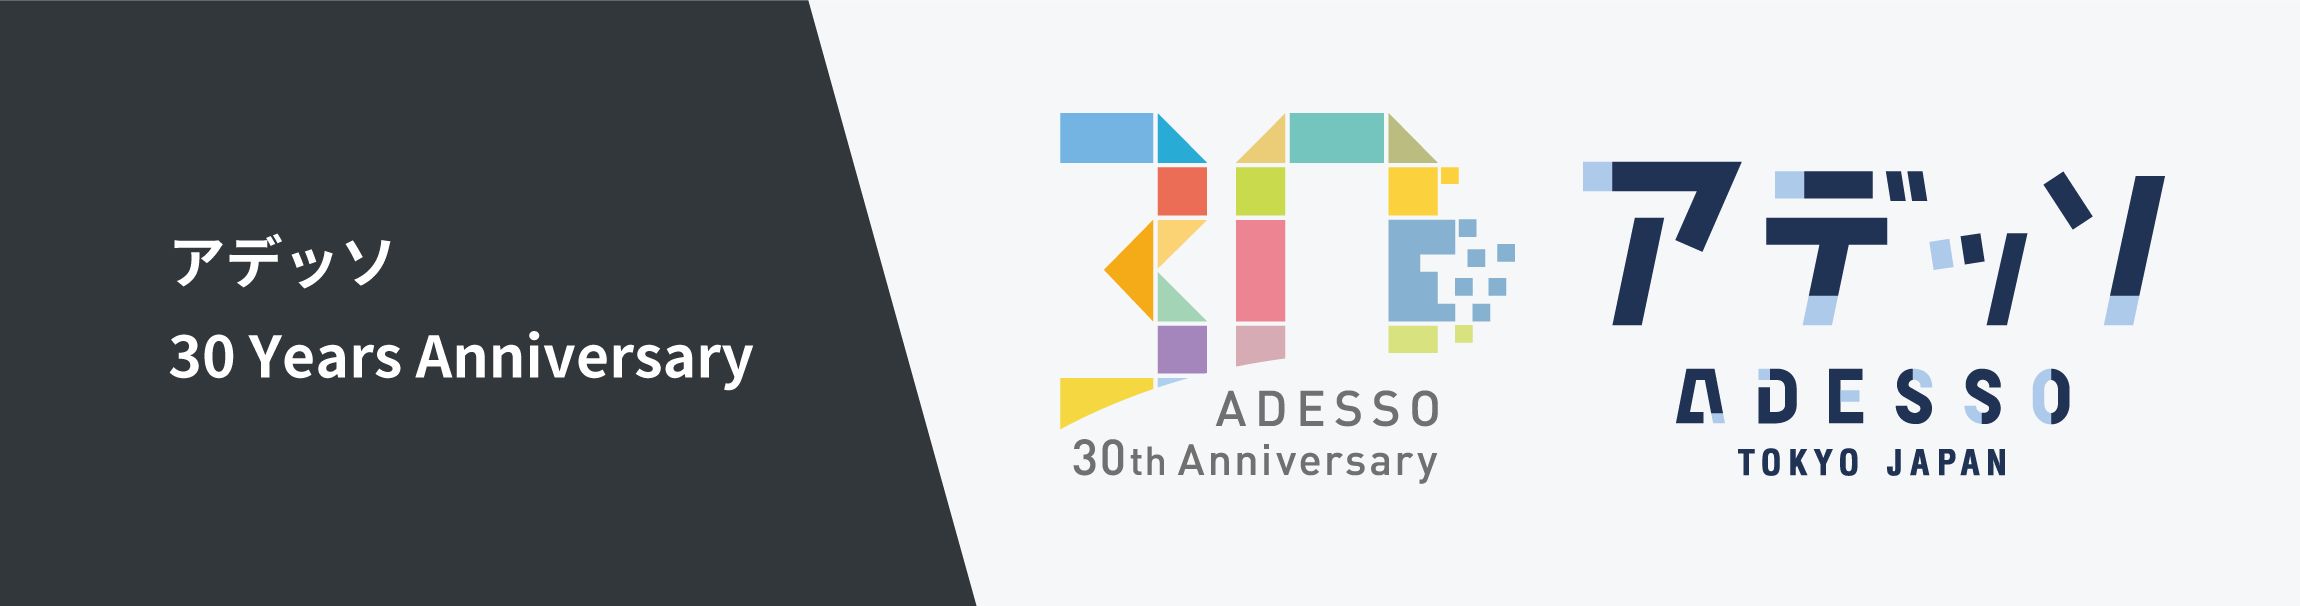 アデッソ 30 Years Anniversary